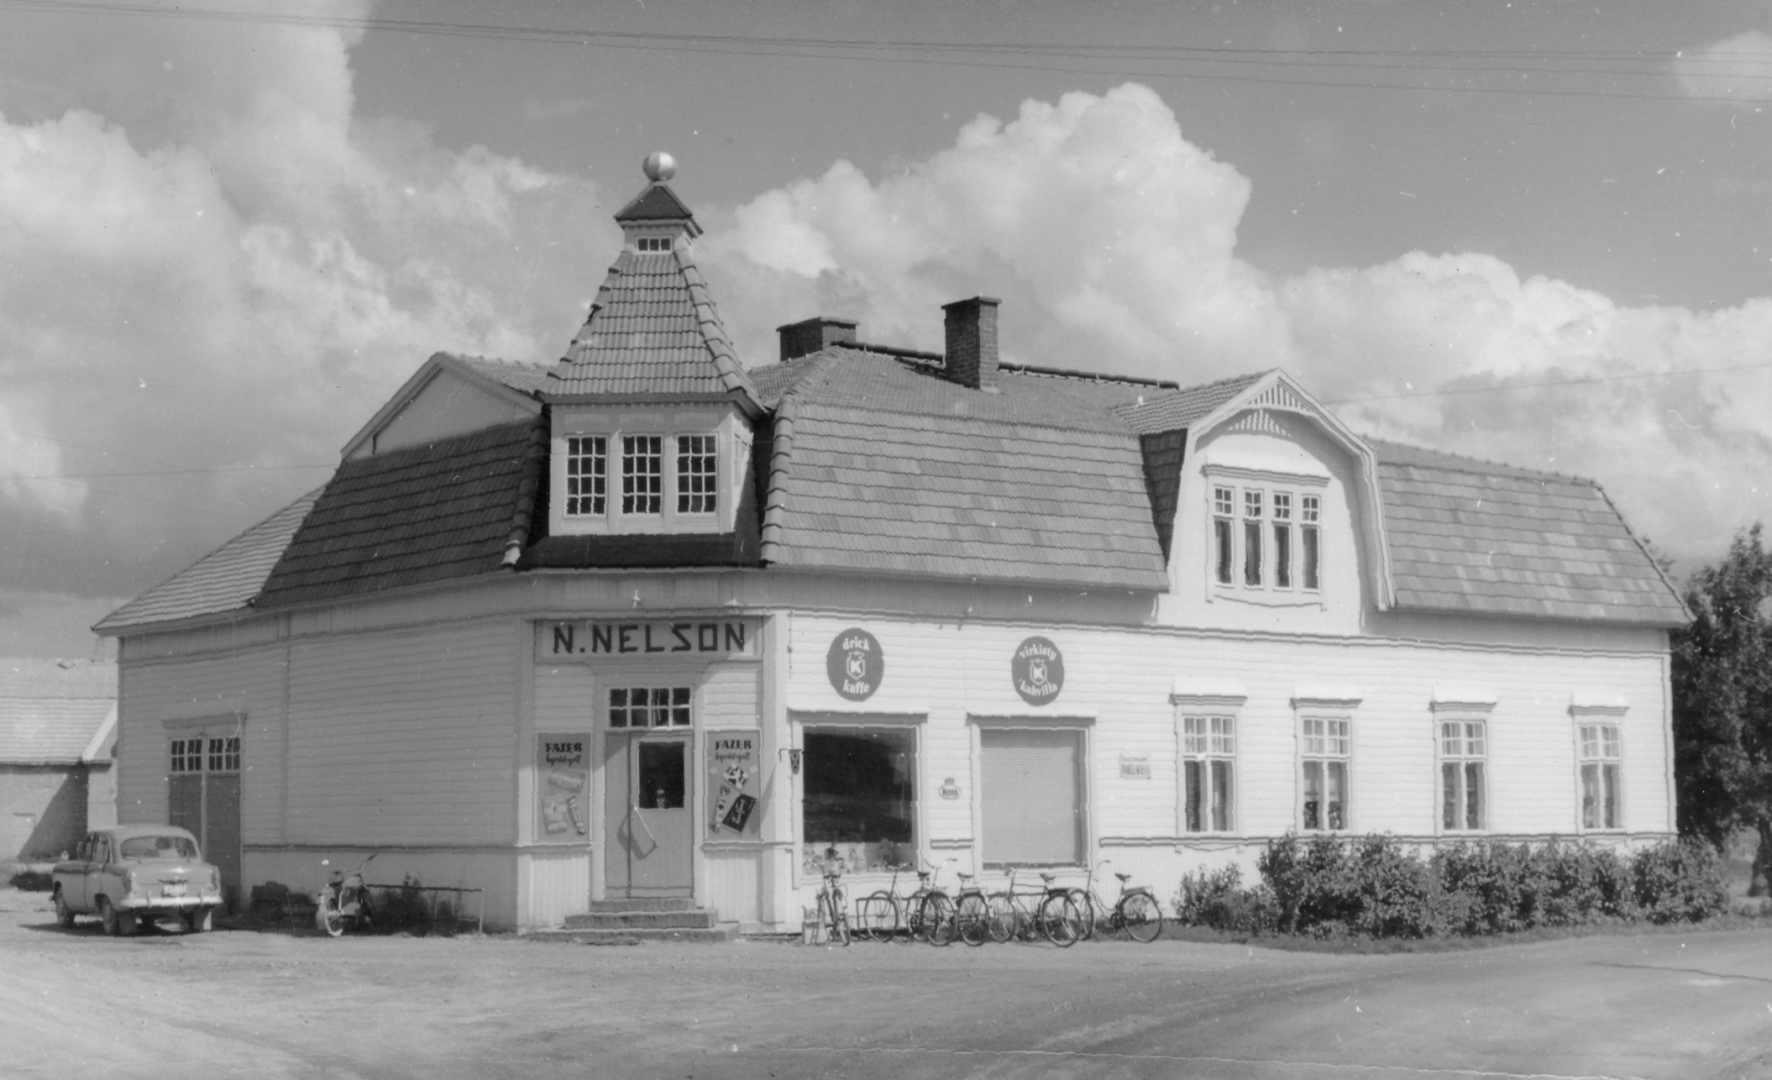 Vykort med Nils Nelsons butik i slutet på 1950-talet.